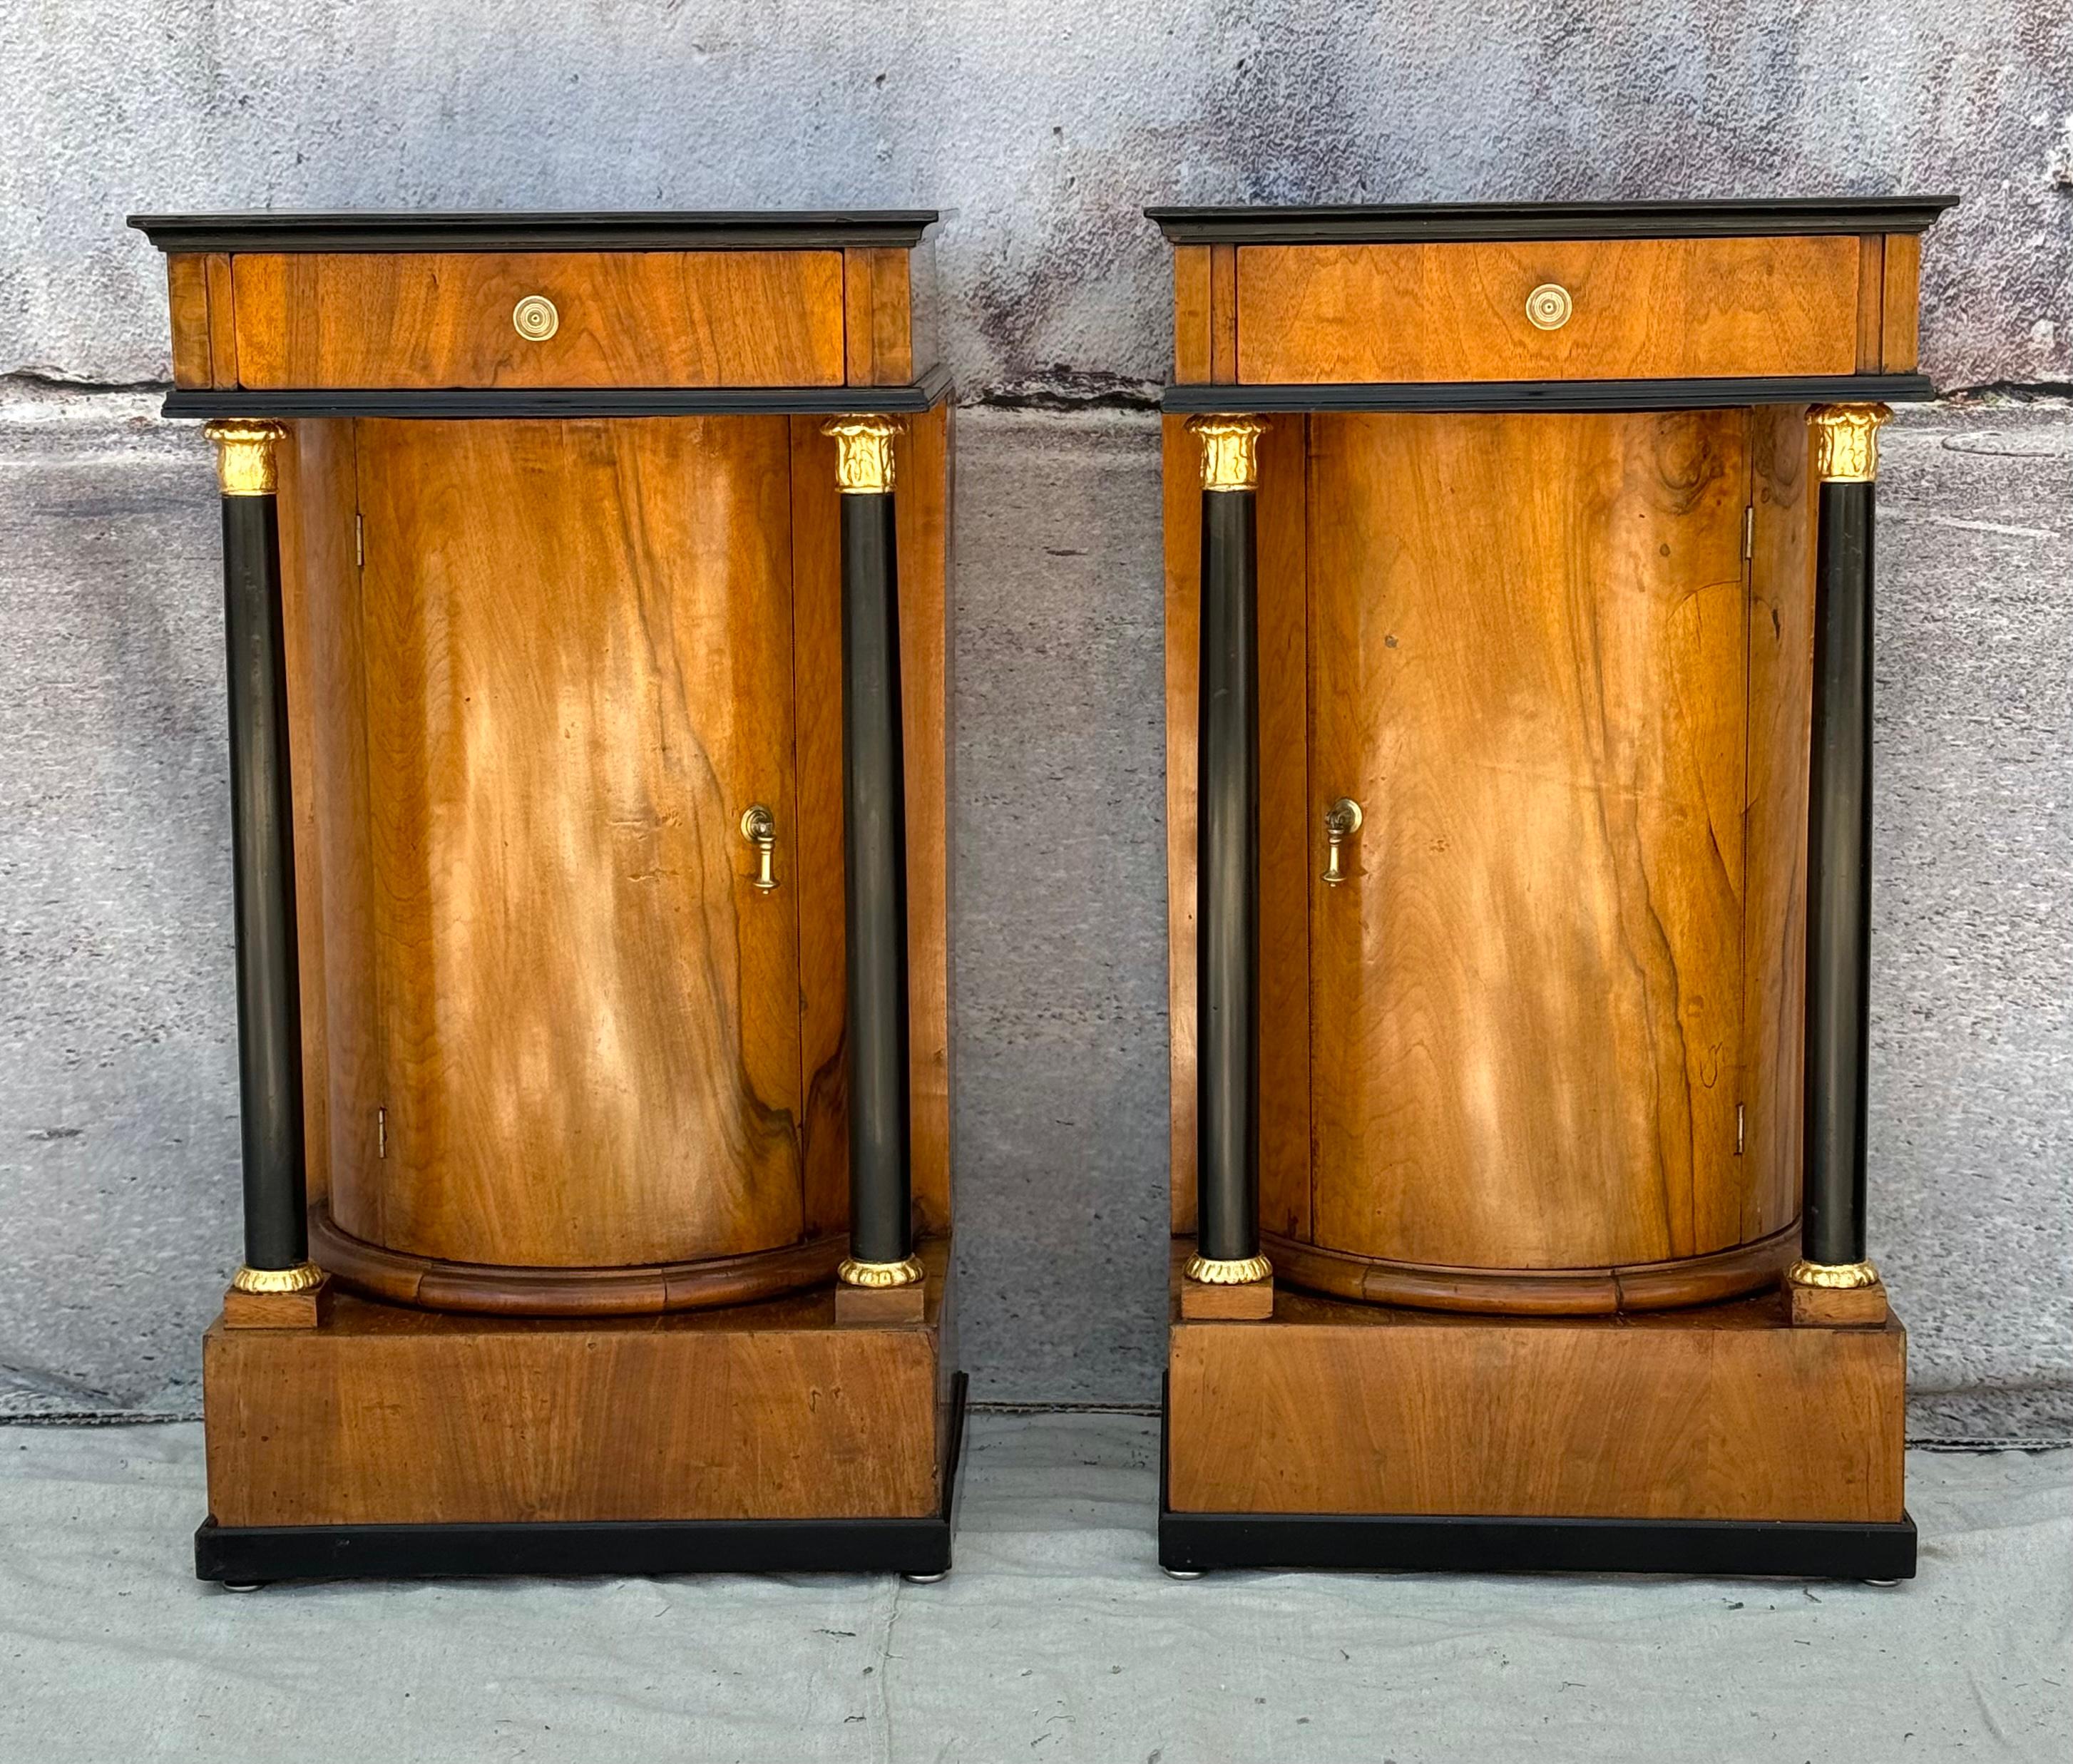 Paar europäische Empirekommoden, frühes 19. Jahrhundert. Jede hat eine einzelne Schublade, die über der säulenartigen Einzeltür liegt. Die Kommoden sind mit je zwei ebonisierten und teilweise vergoldeten Säulen ausgestattet, die auf quadratischen